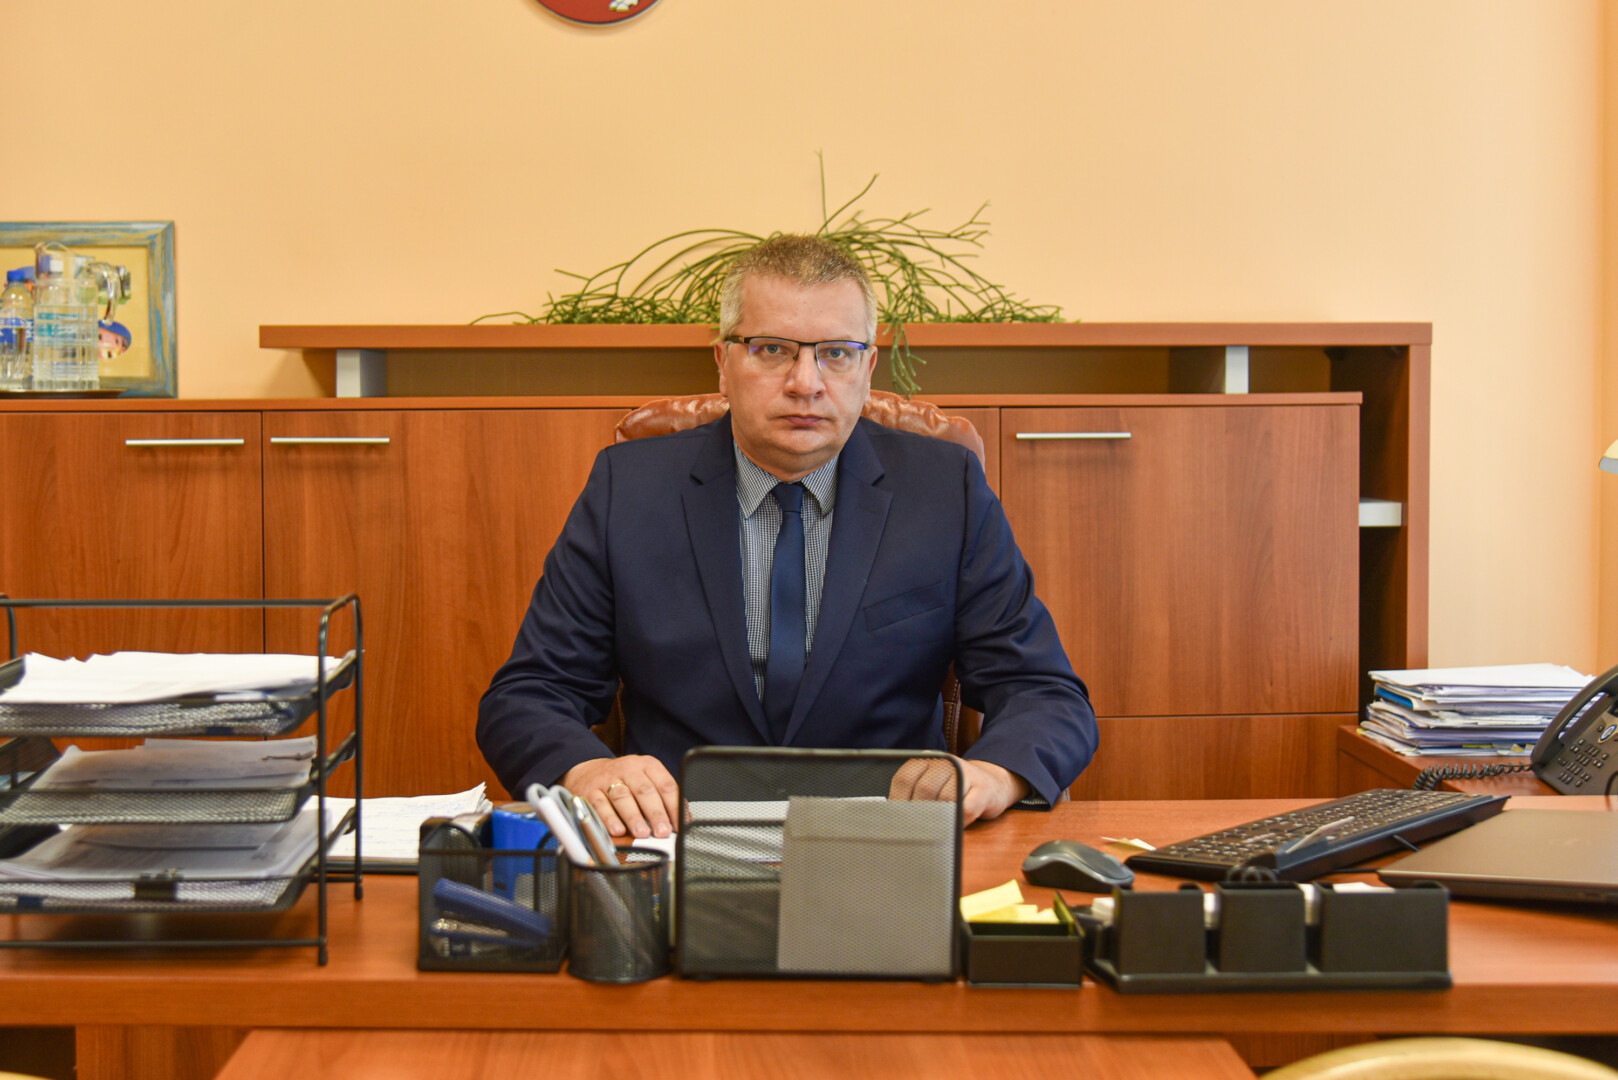 Panevėžio rajono savivaldybės administracijos direktorius Eugenijus Lunskis teigia neturintis atsakymo, ar Velžio komunalinio ūkio šilumos kainos ir toliau stebins Lietuvą. P. ŽIDONIO nuotr.